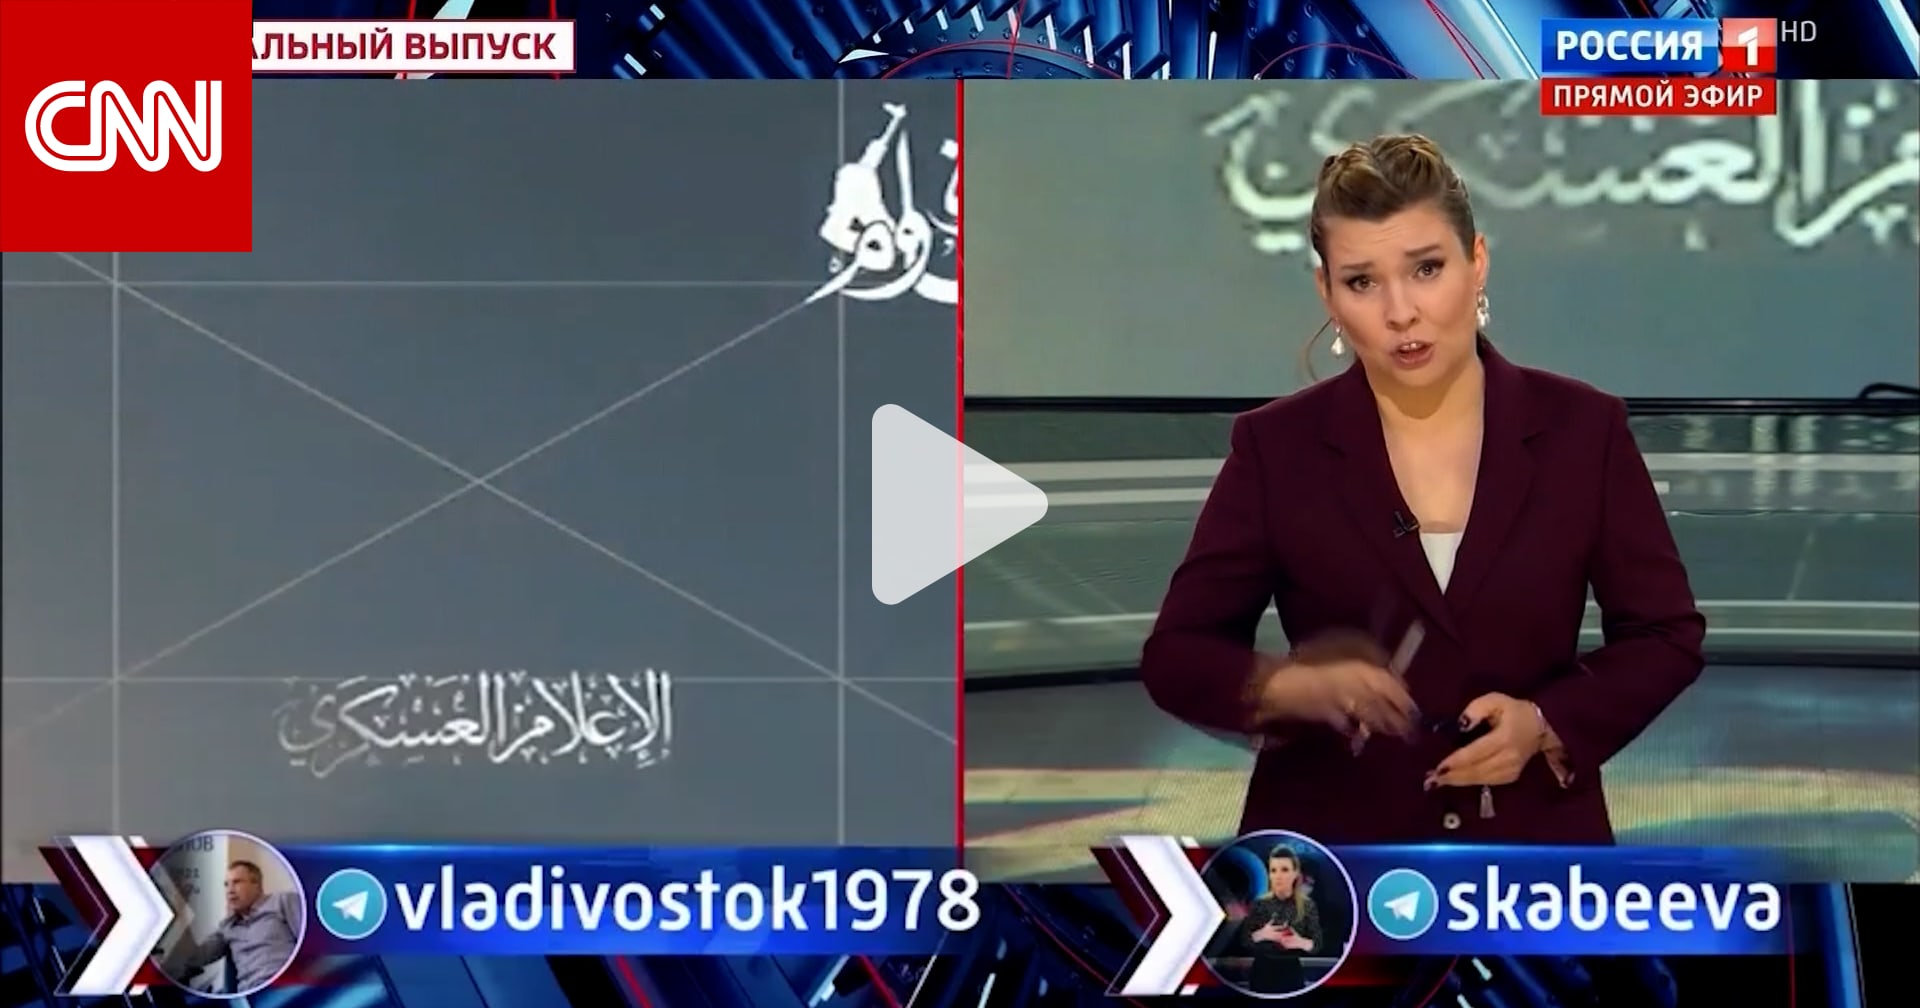 التلفزيون الرسمي الروسي يسخر من الولايات المتحدة وإسرائيل بعد هجوم حماس